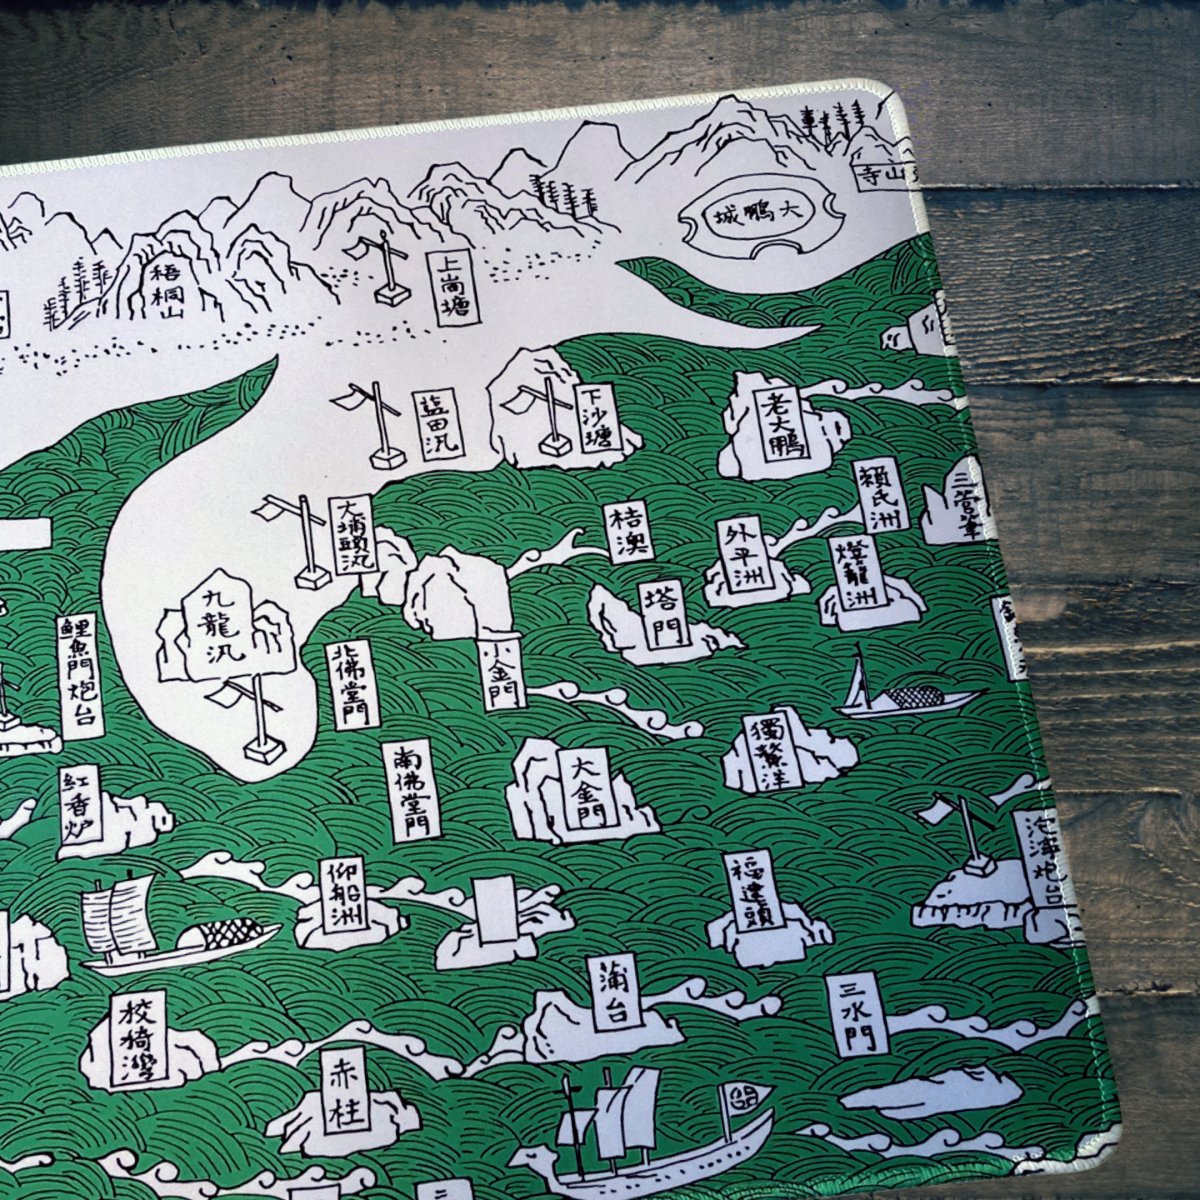 重製版1819年新安縣志香港海防地圖款滑鼠墊 - Hong Kong Maper